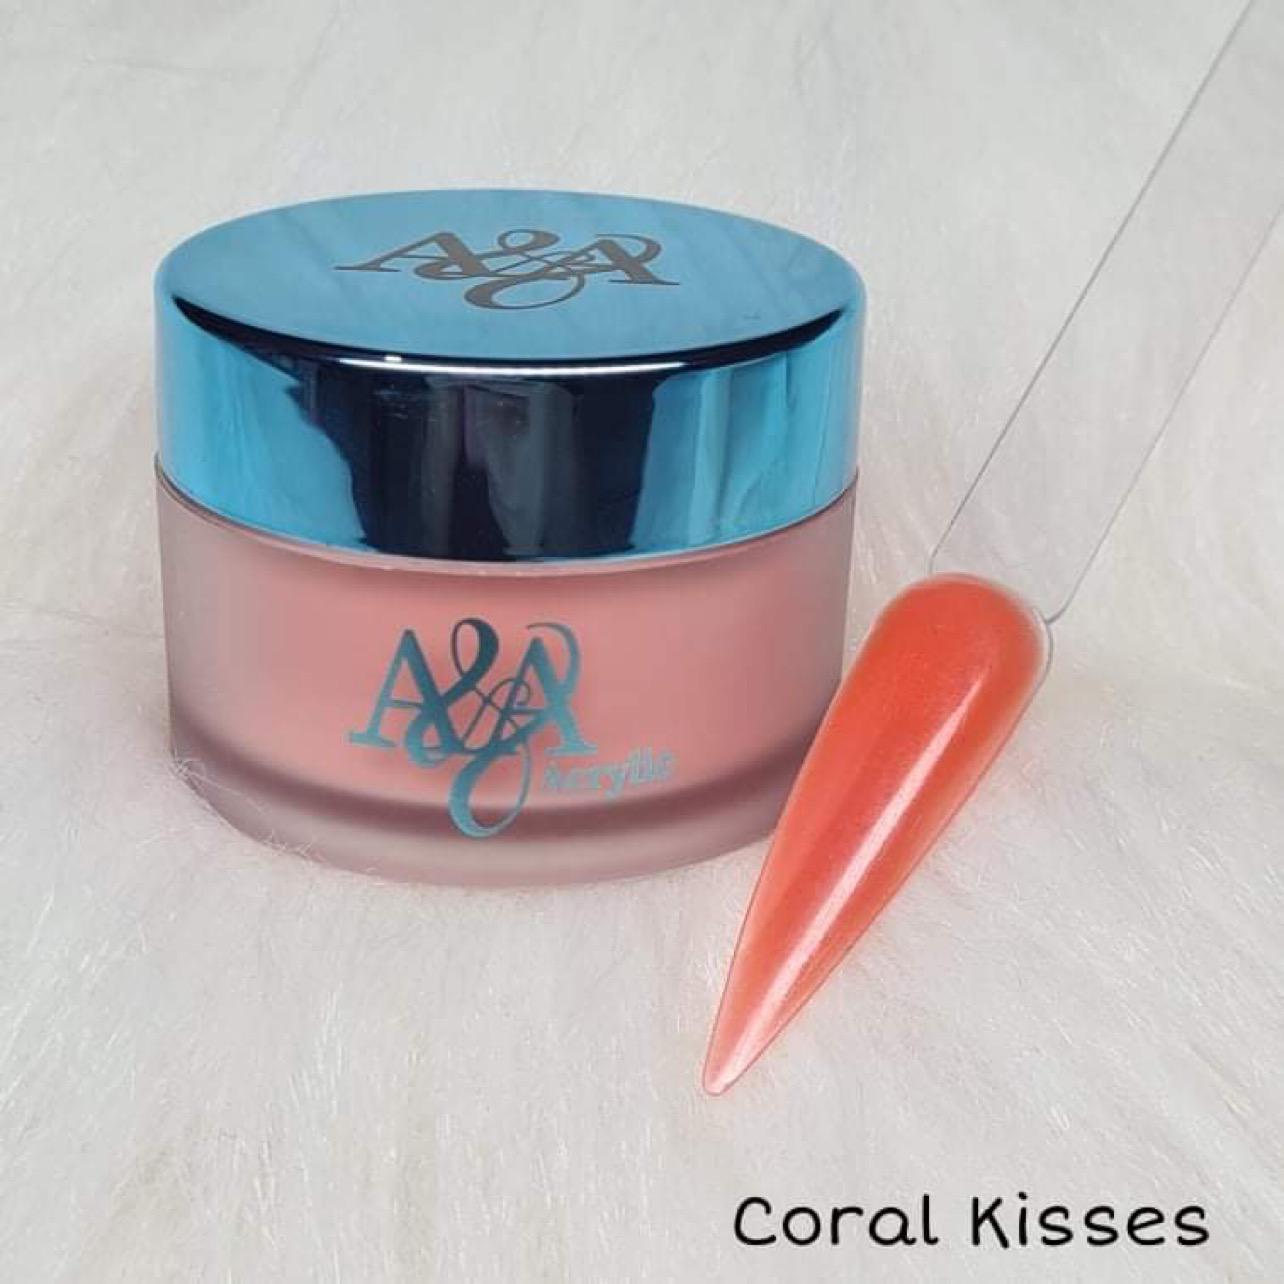 Coral Kisses - Colour acrylic